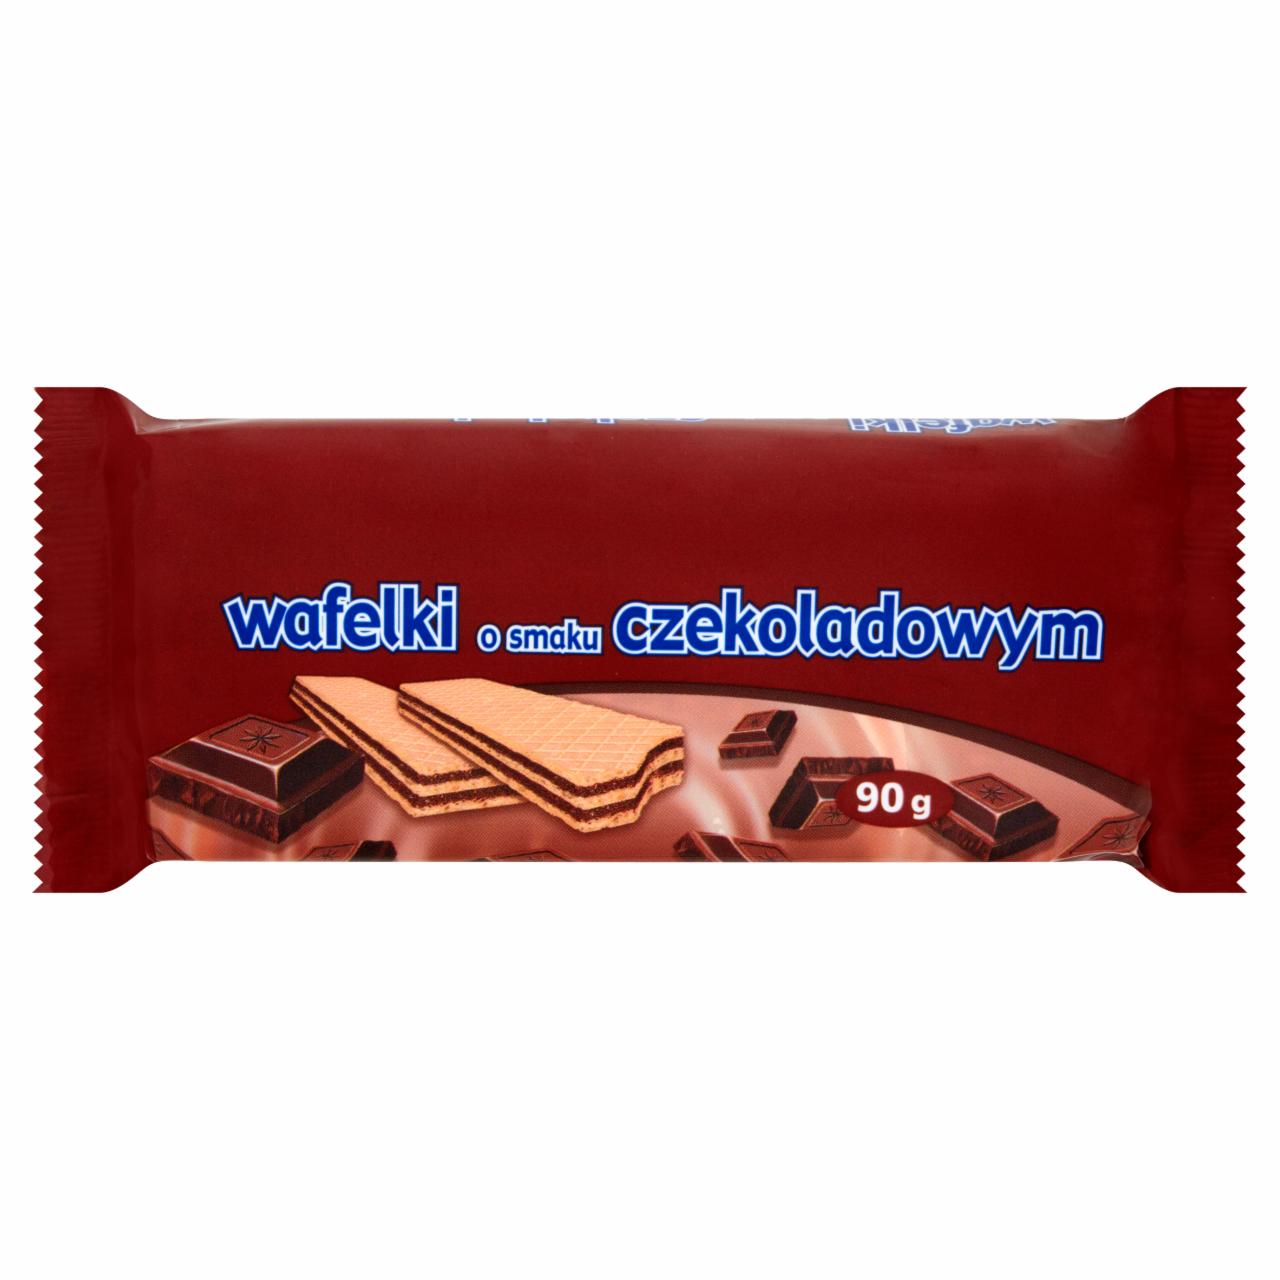 Zdjęcia - Wafelki o smaku czekoladowym 90 g